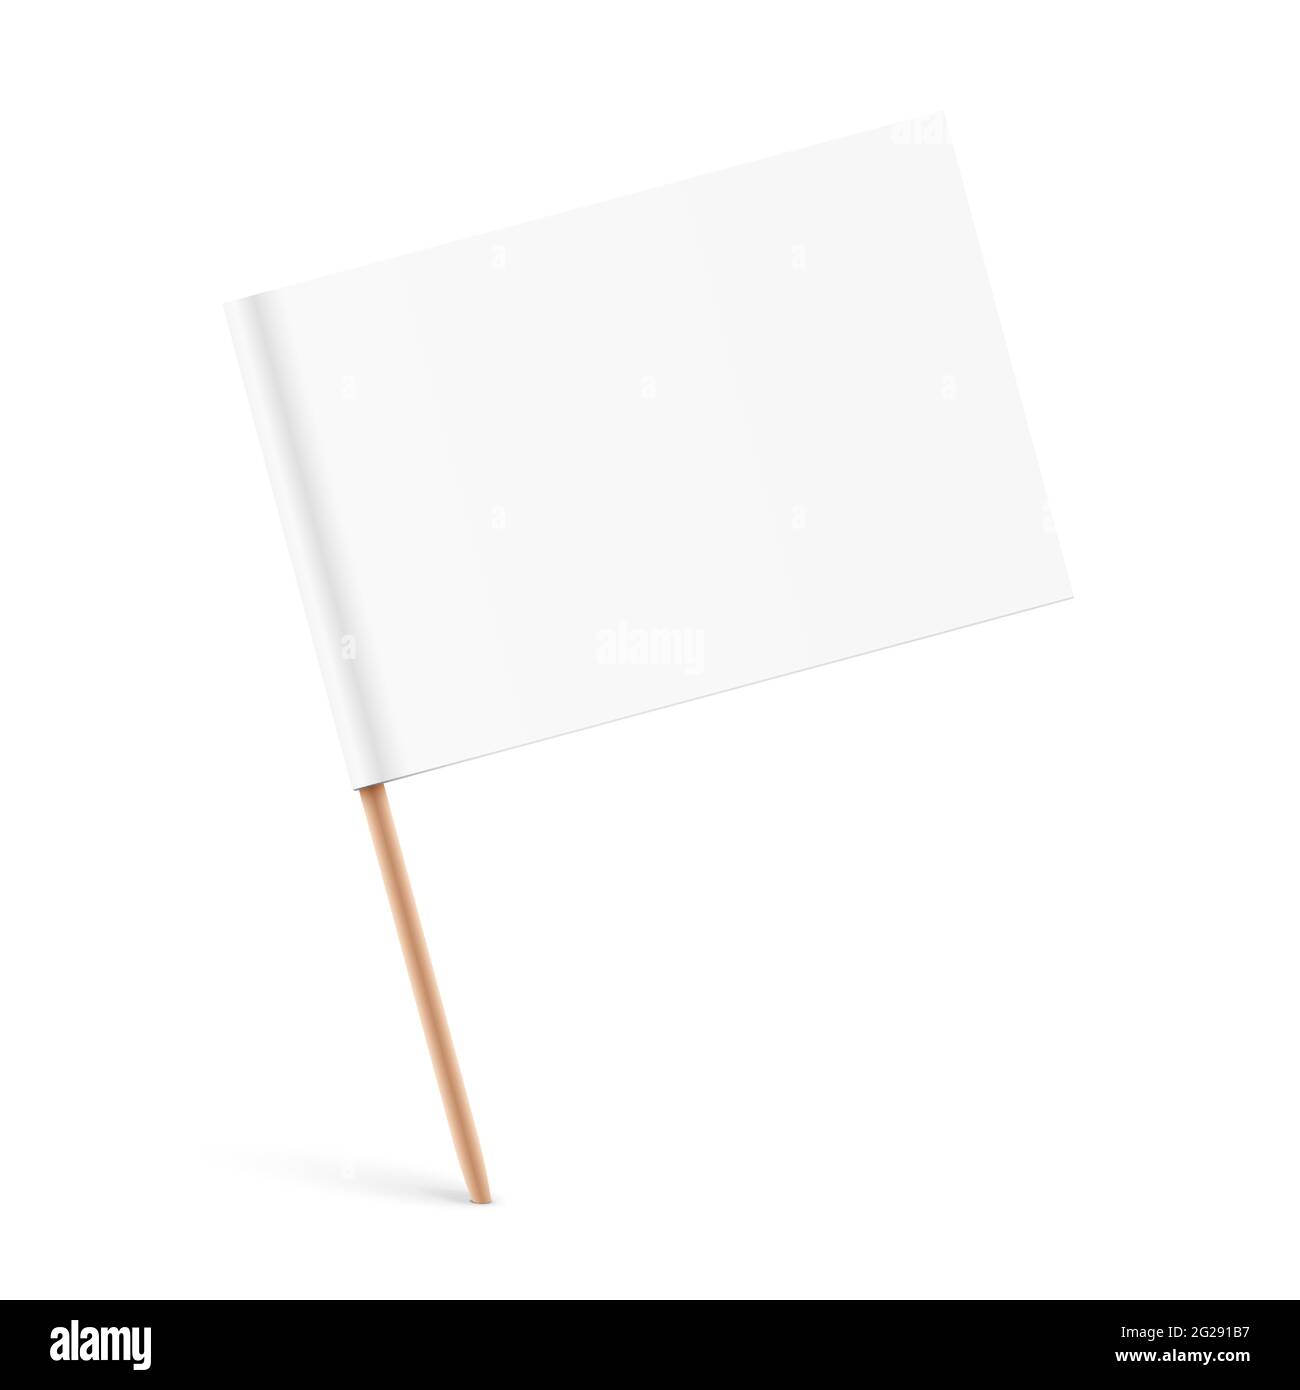 Weiße Papierfahne mit einem Holzstab, auf einer Oberfläche geklebt. Vektorgrafik für kleine Papierfahnen. Stock Vektor